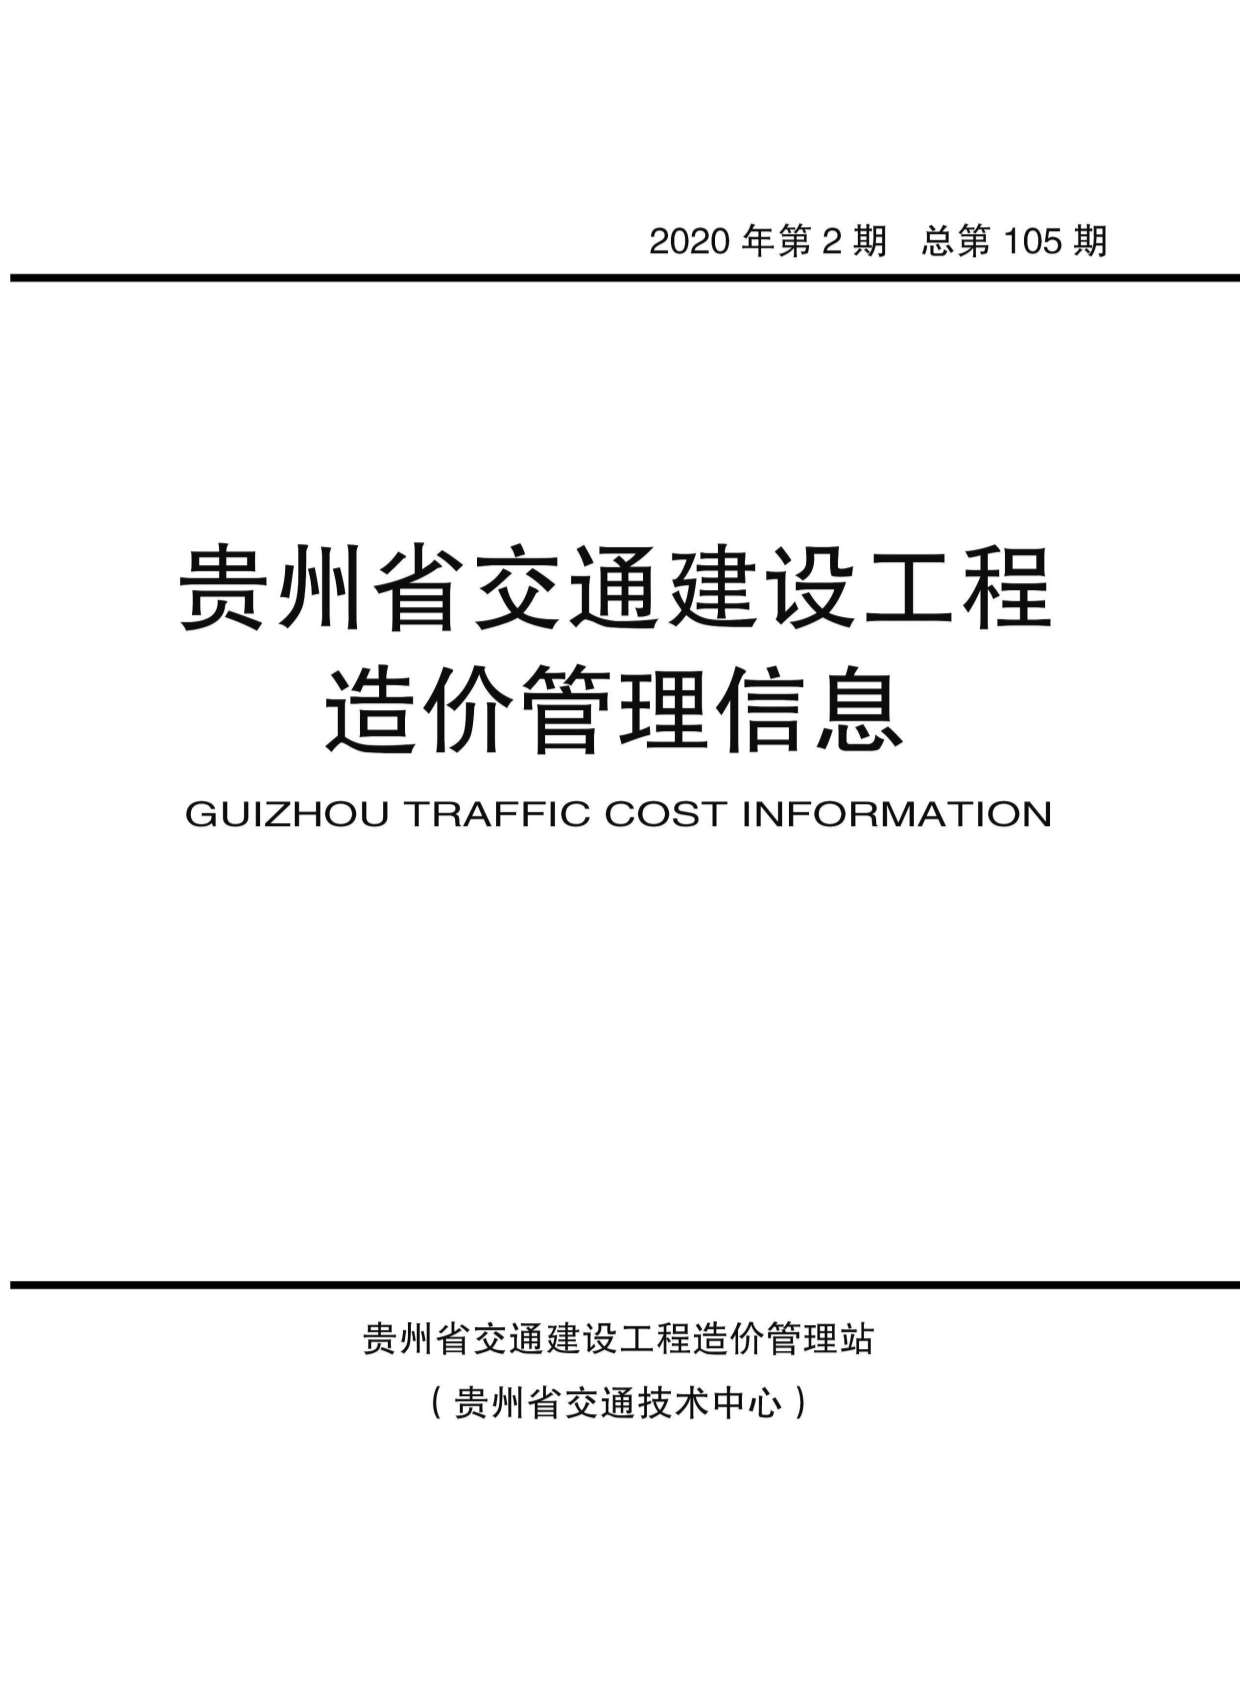 贵州省2020年2月交通建设工程造价管理信息造价库信息价